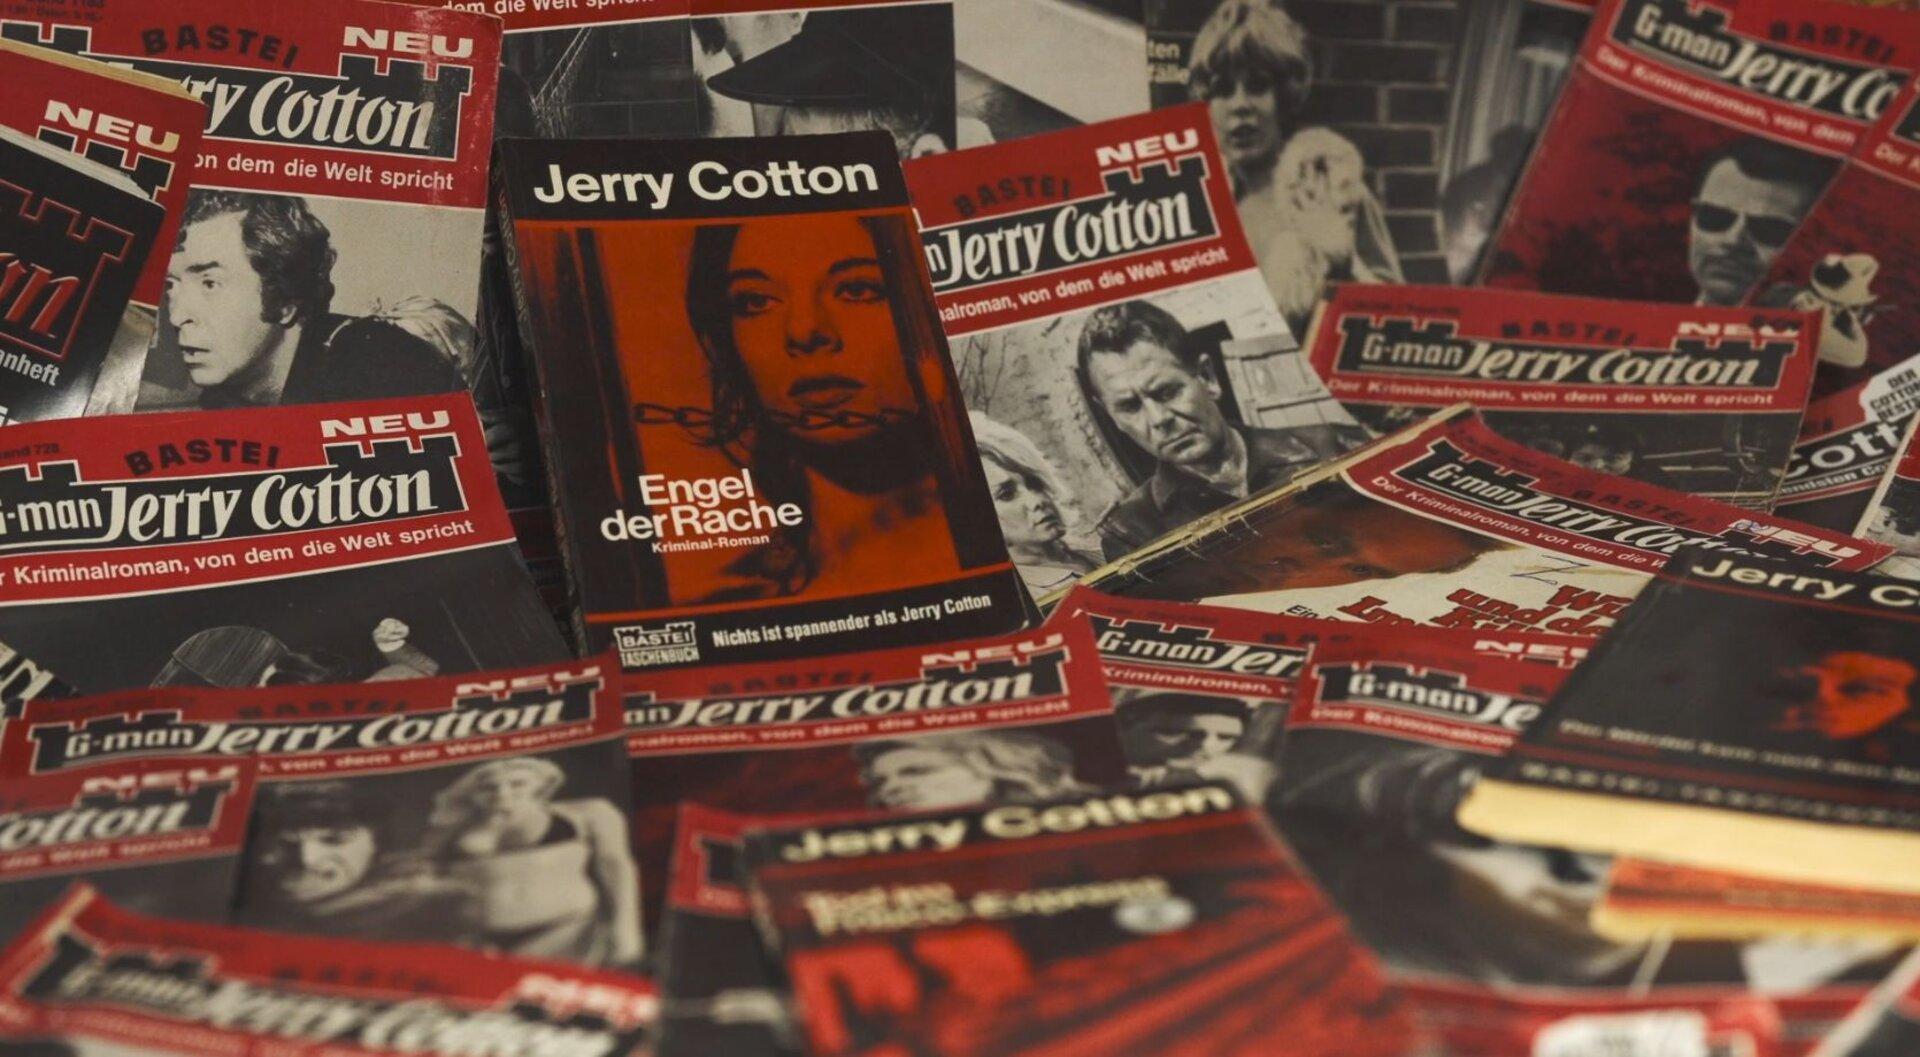 Jerry-Cotton-Romane: Der Agent, der niemals altert